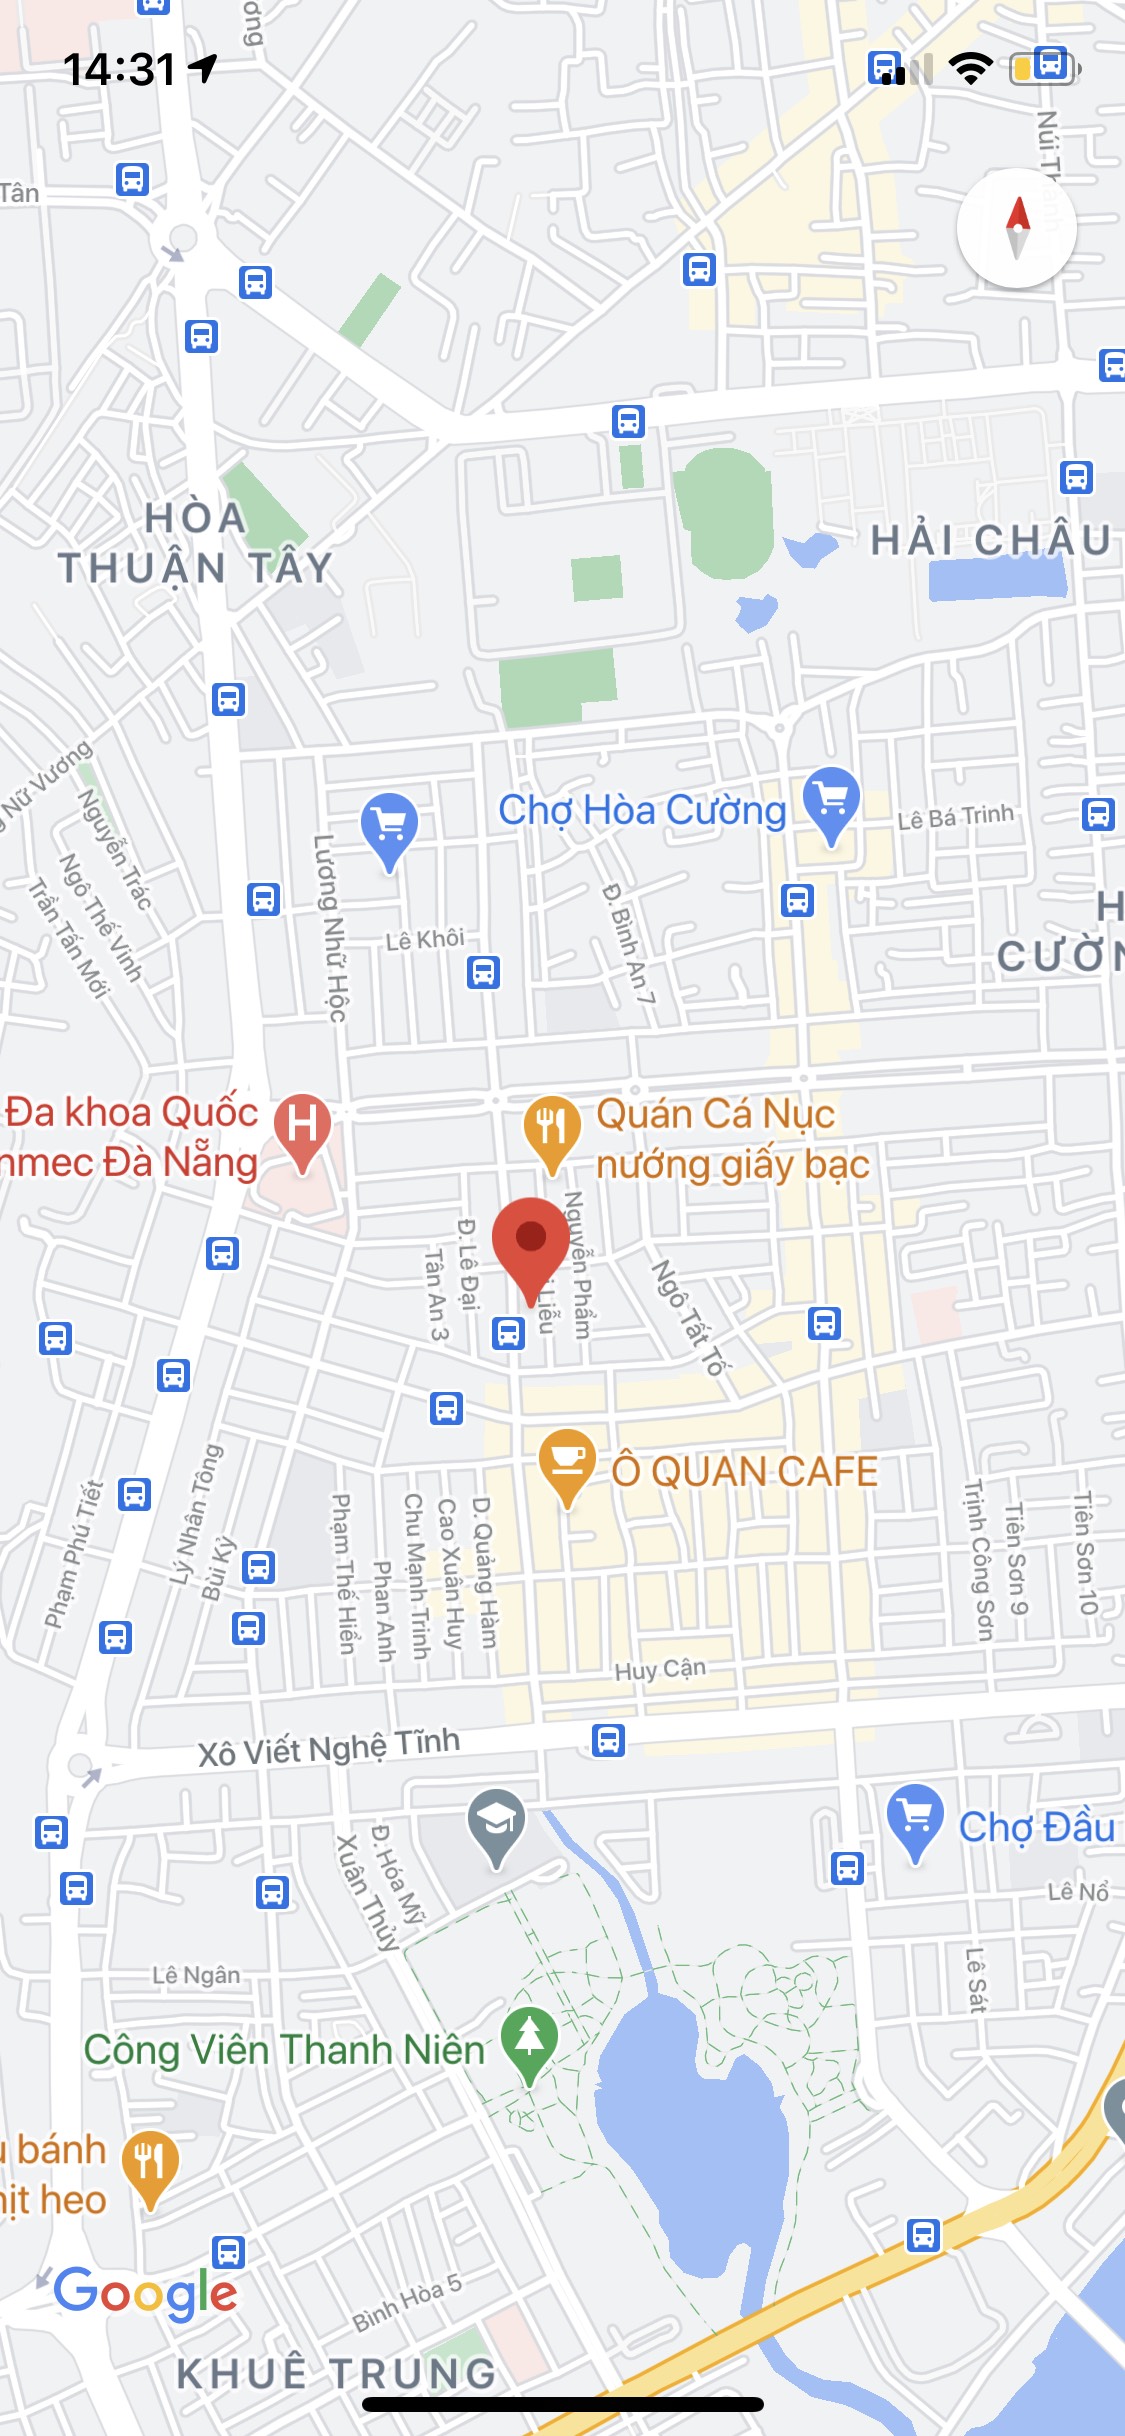 Bán Nhà Mặt tiền đường Huỳnh Tấn Phát, Quận Hải Châu. Diện tích : 95m2, đường 10,5m. Gía: 10,5 tỷ